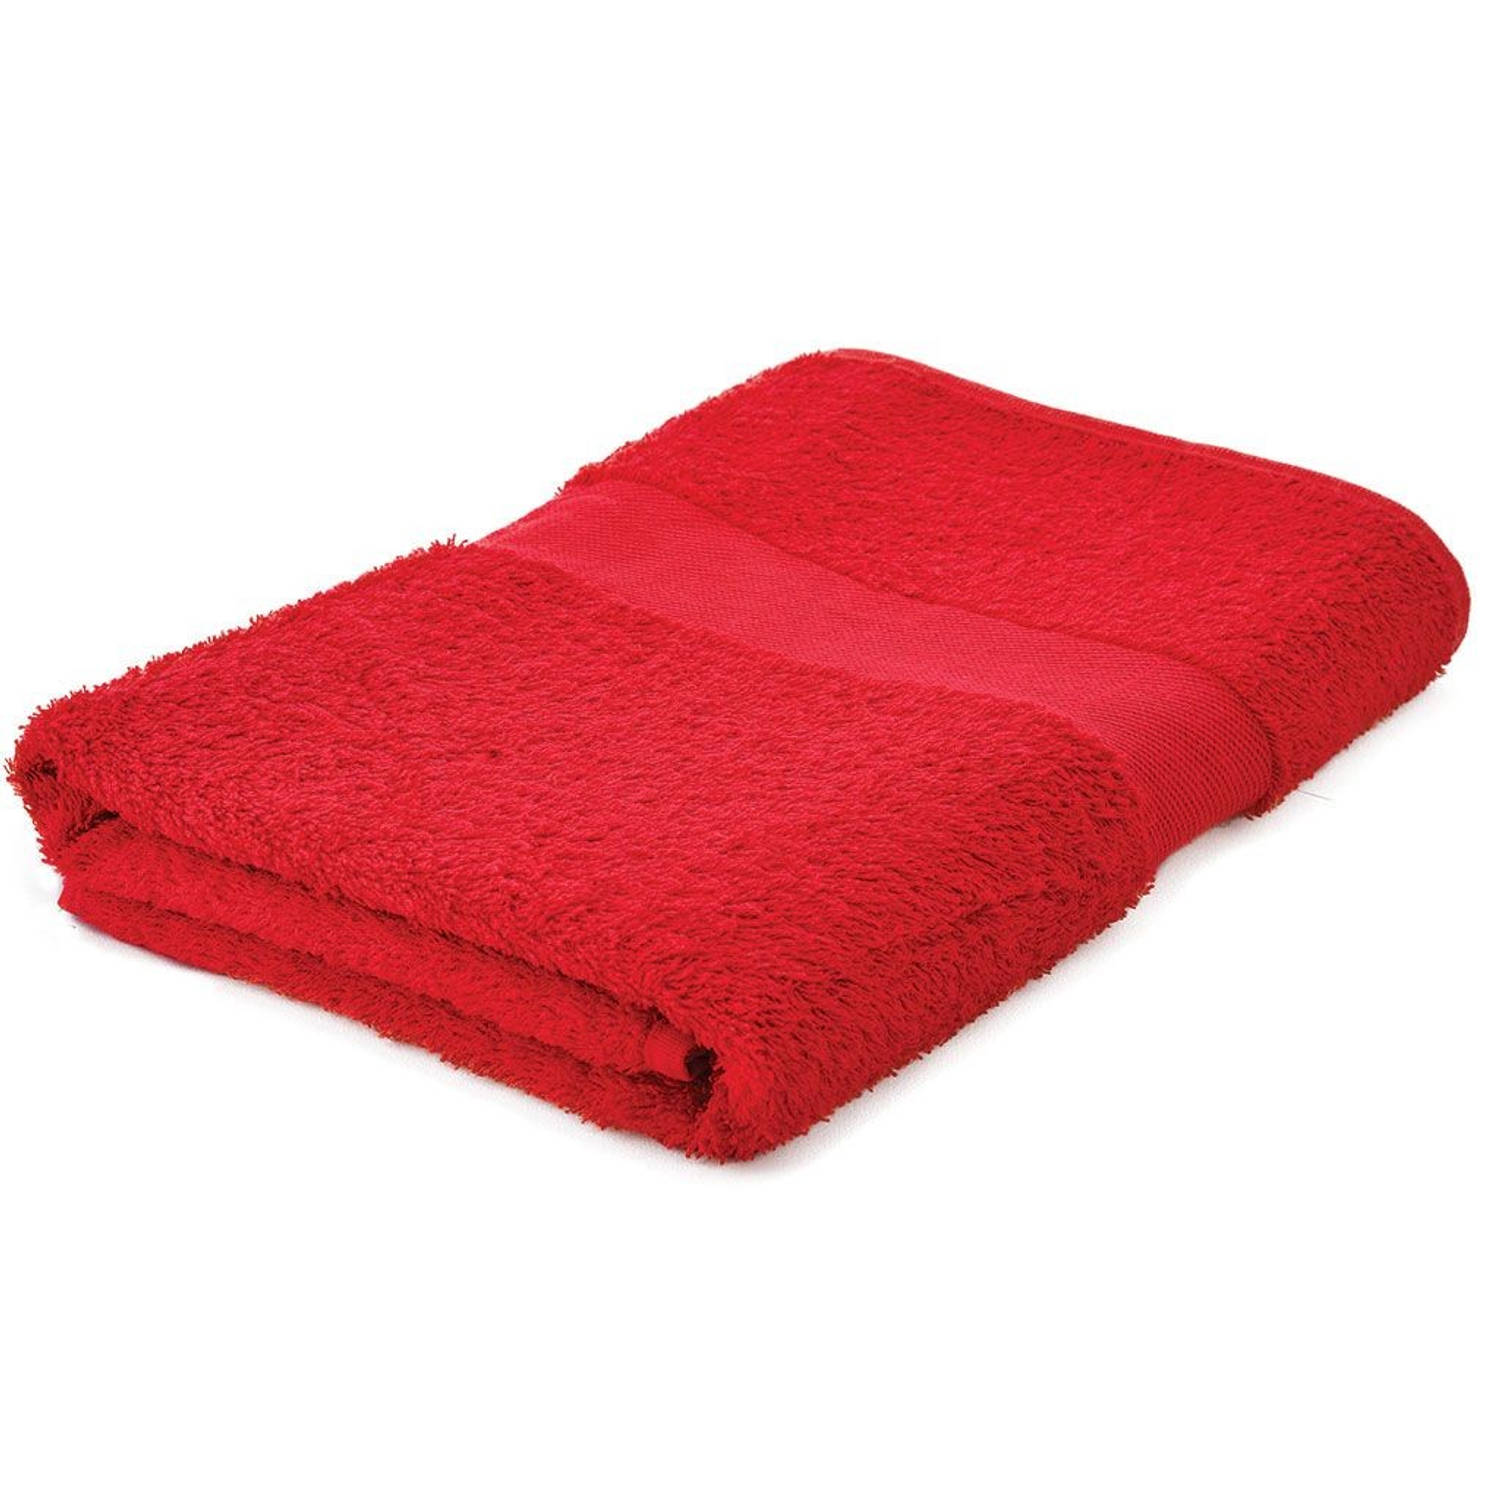 vooroordeel Supermarkt Integreren Arowell badhanddoek badlaken 140 x 70 cm - 500 gram - rood - 3 stuks |  Blokker